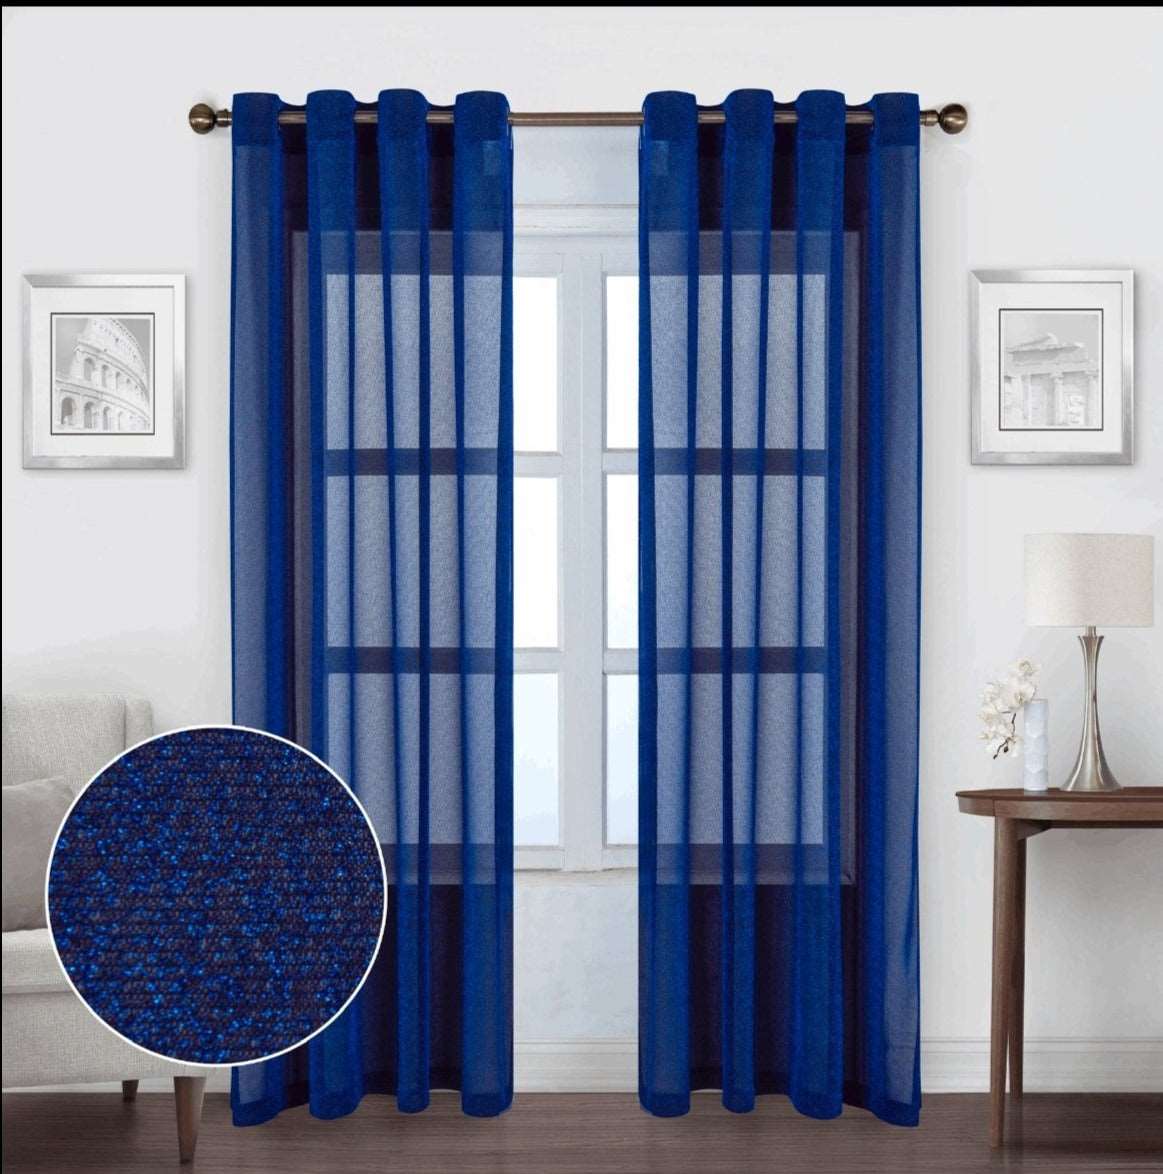 Linen World Royal Blue “Esperanza” Sparkly Sheer Panel